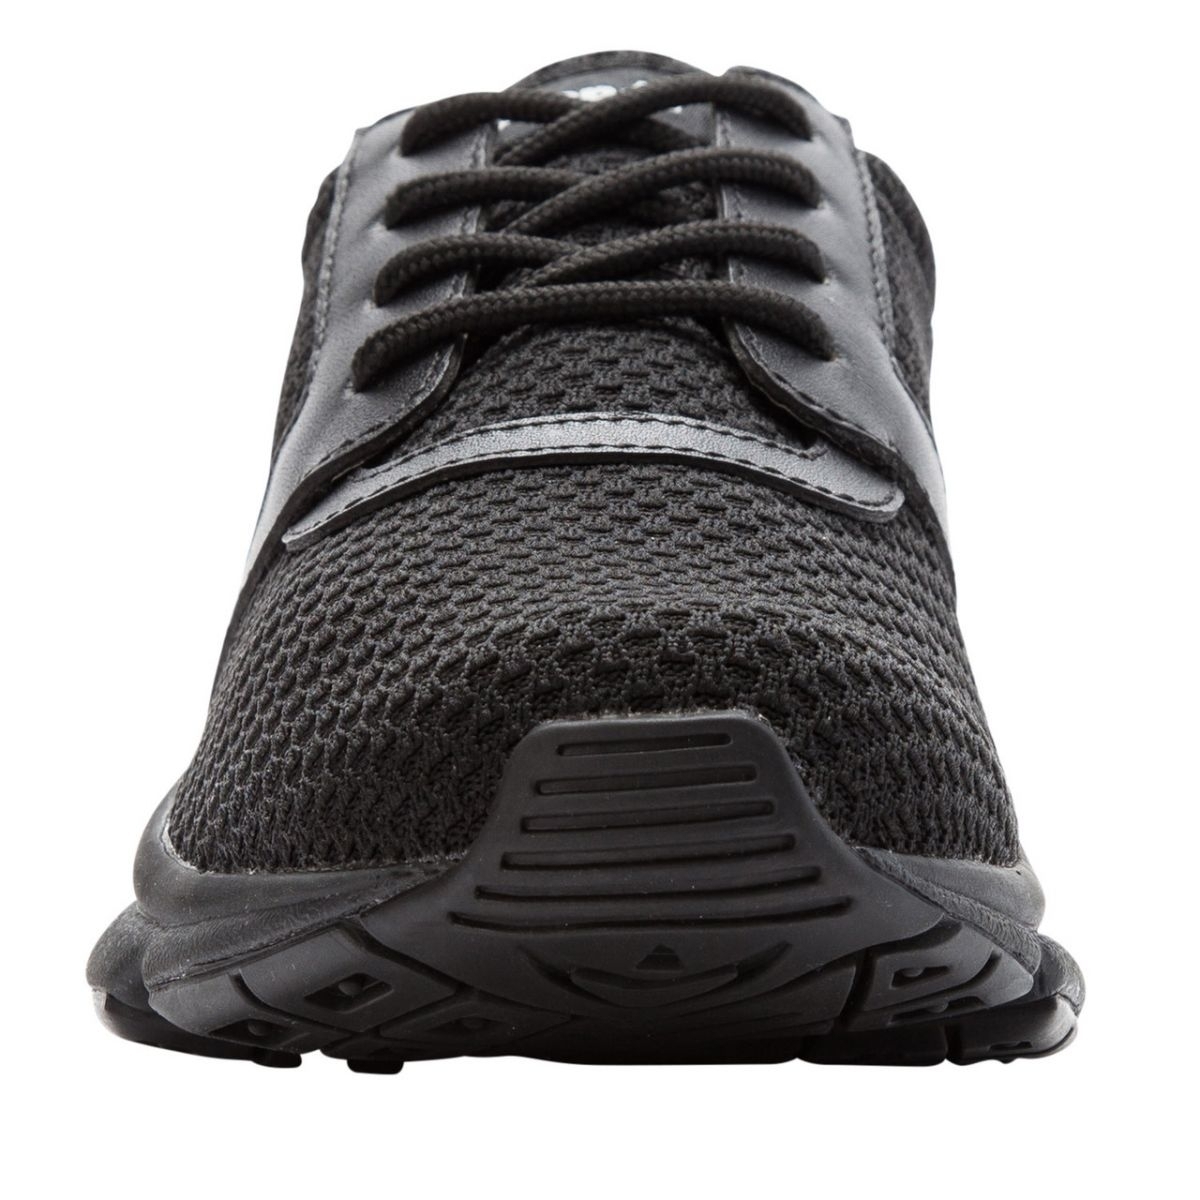 Propet Women's Stability X Walking Shoe Black - WAA032MBLK BLACK - BLACK, 10